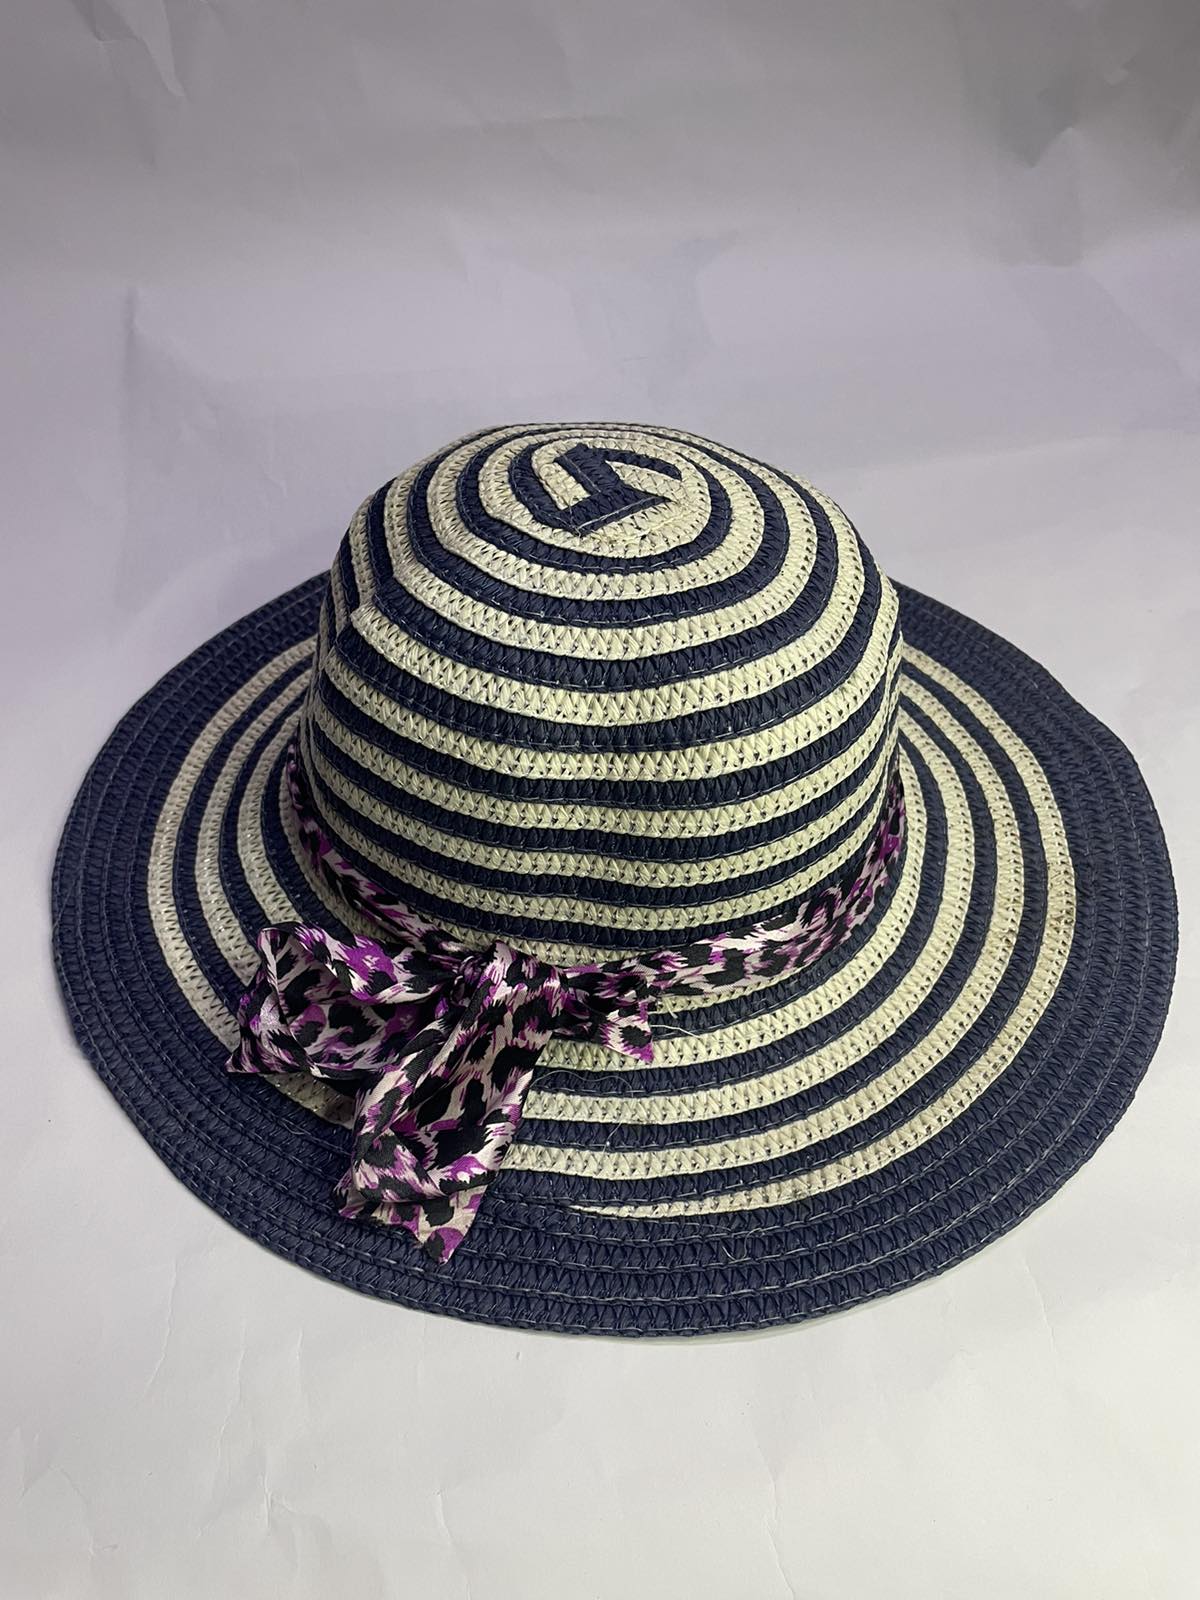 Καπέλο γυναικείο ψαθάκι no Κ 2013